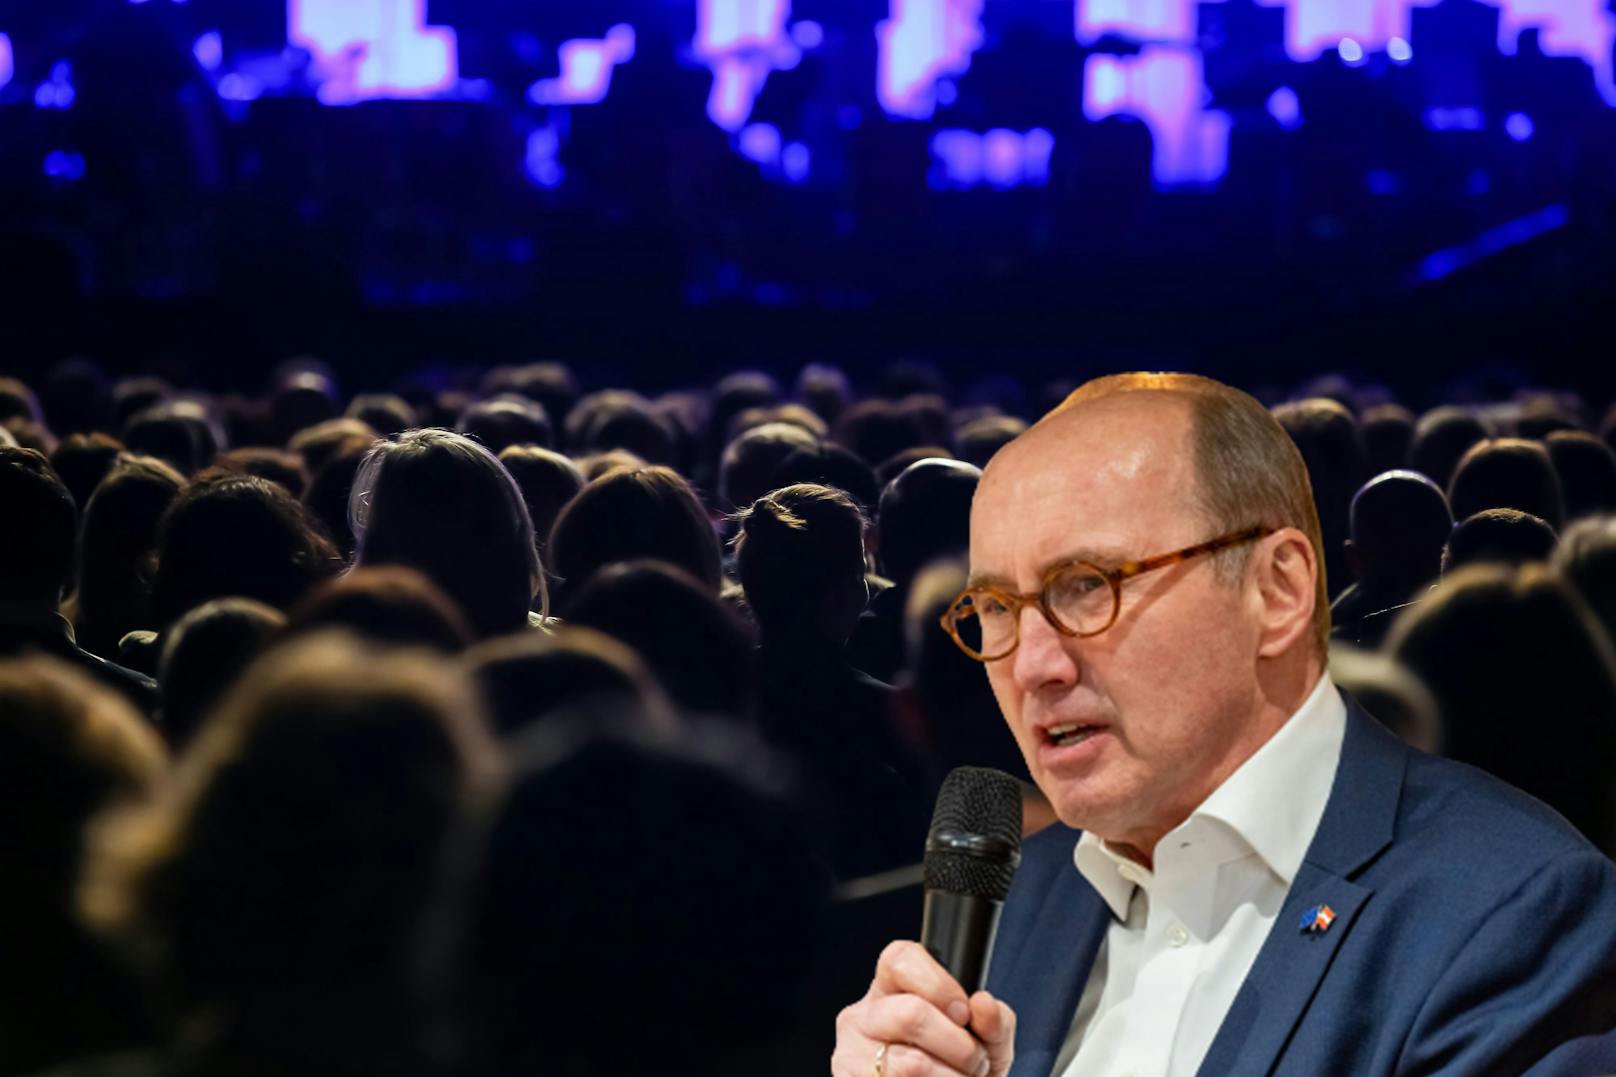 ÖVP-Politiker bei Festival-Eröffnung in NÖ ausgebuht